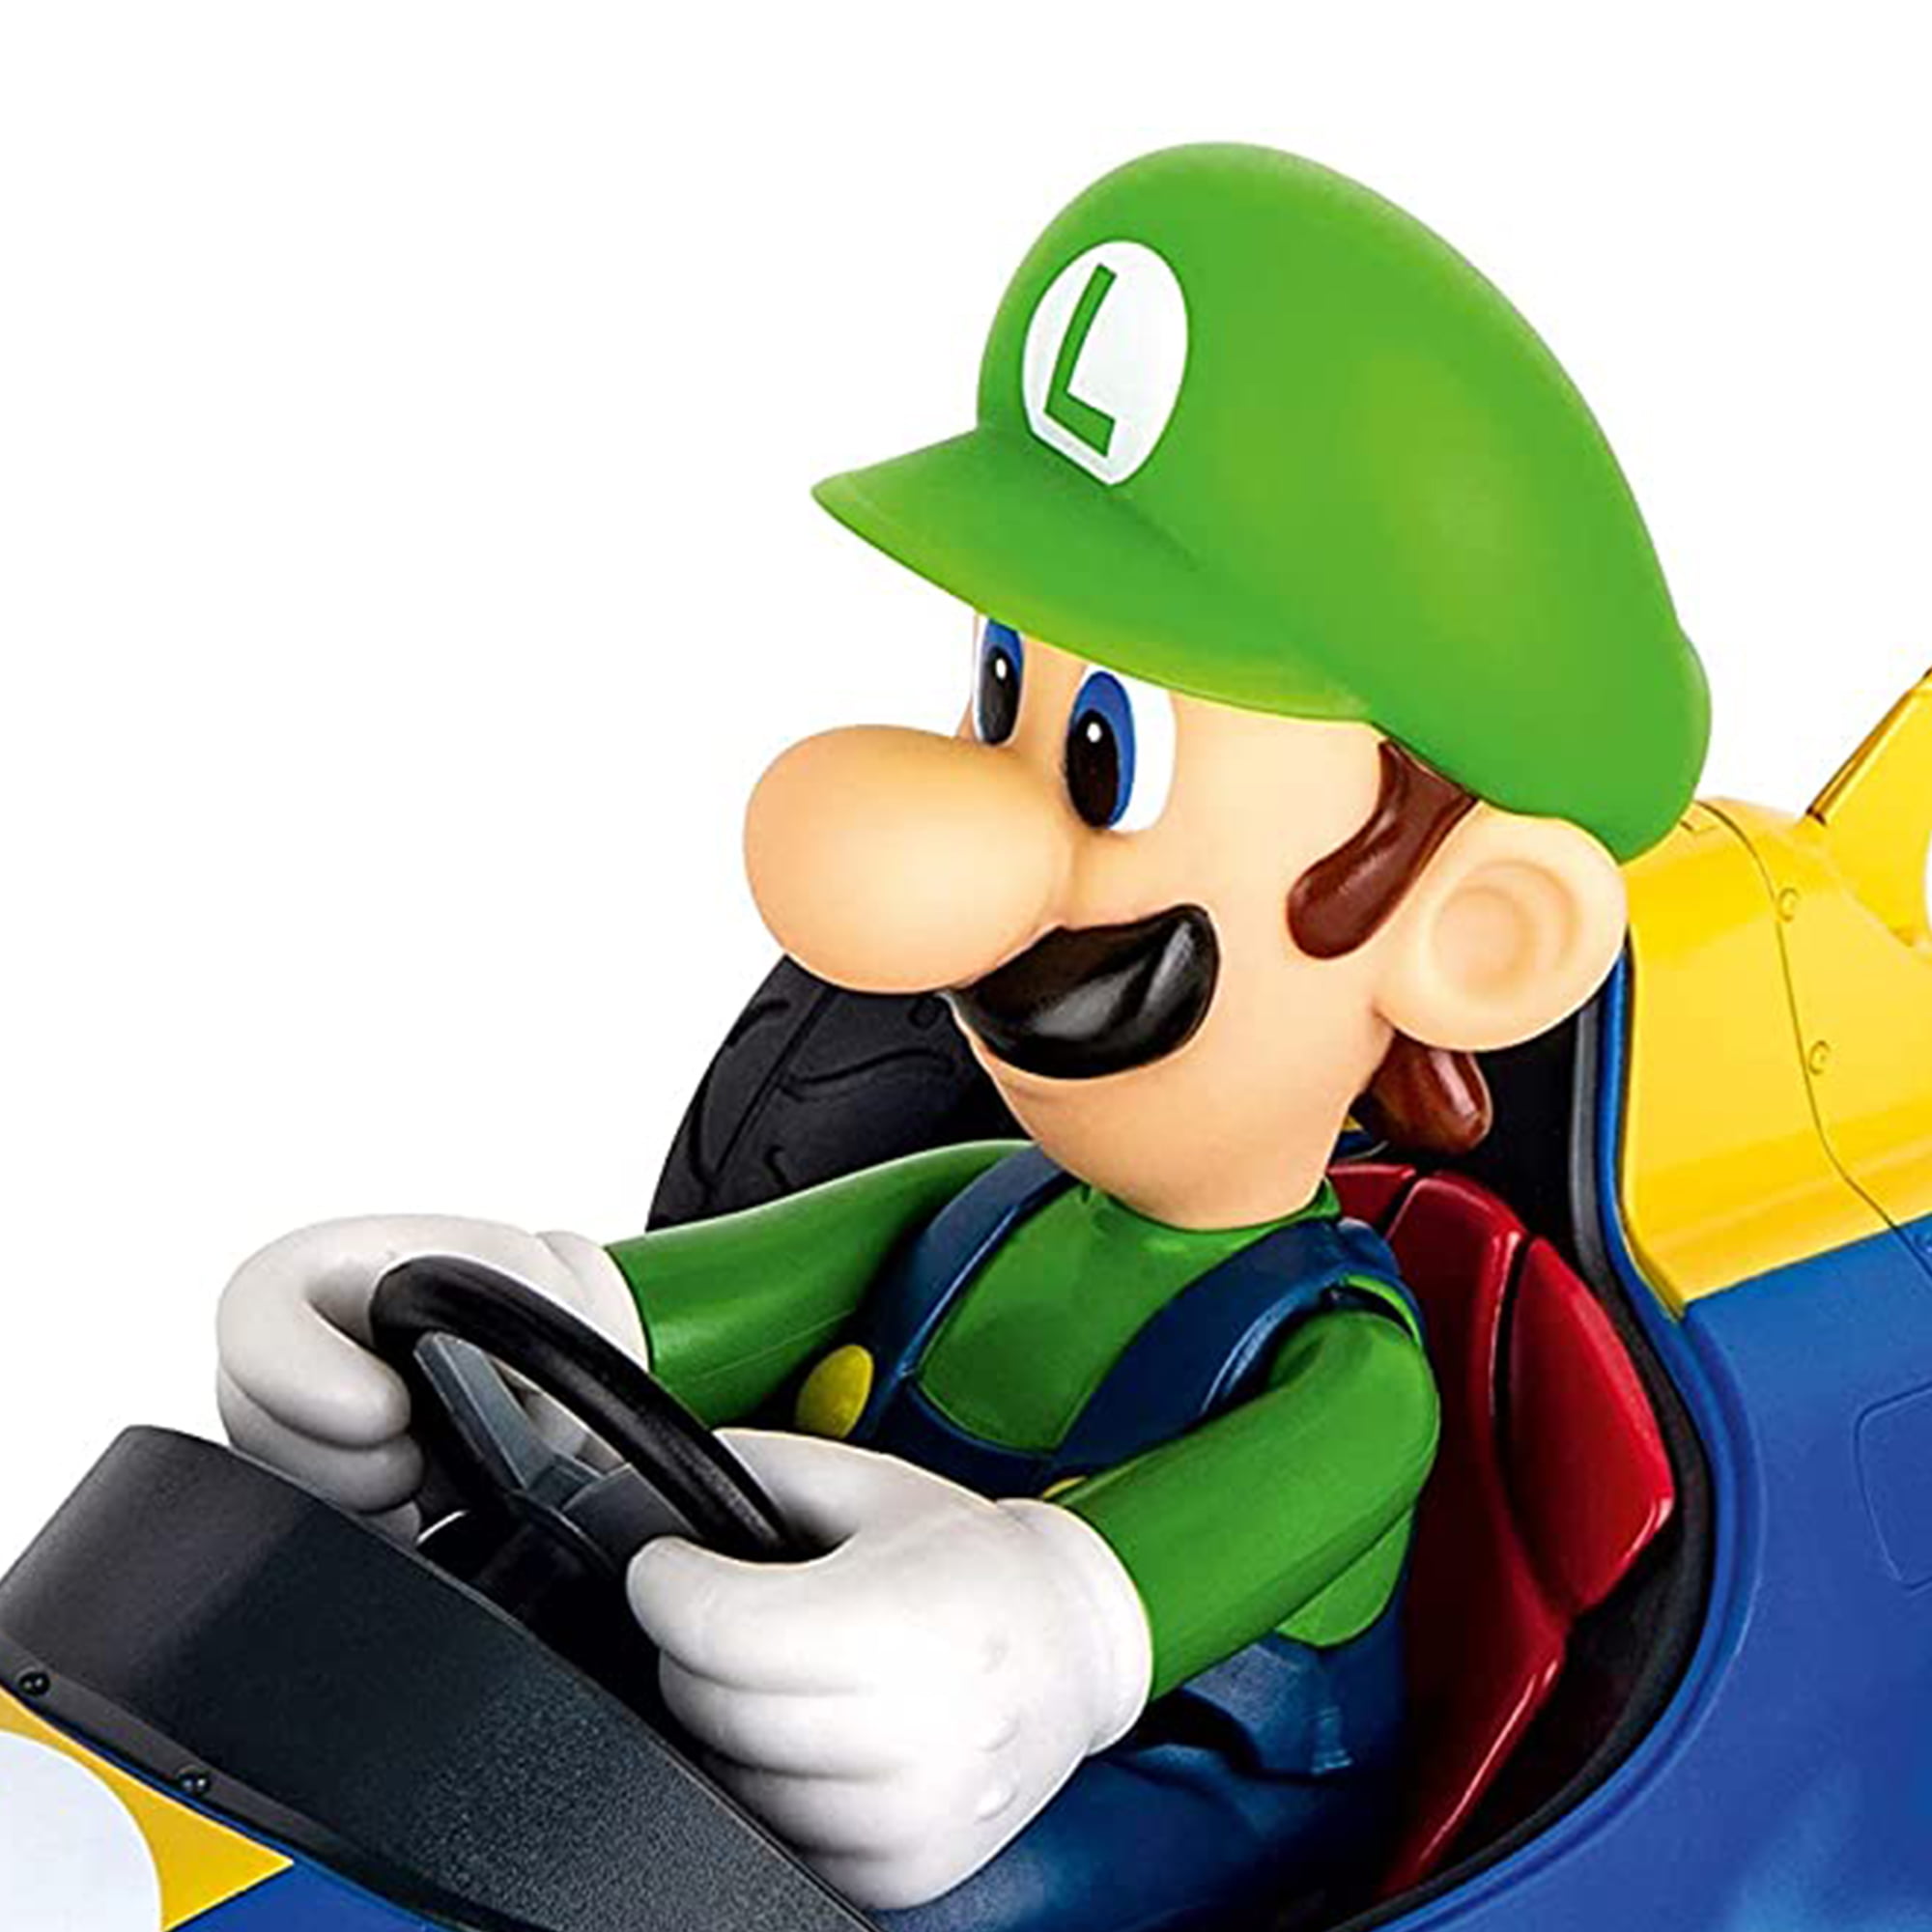 Carrera Officially Licensed Nintendo Mario Kart Remote Control Car, Luigi -  